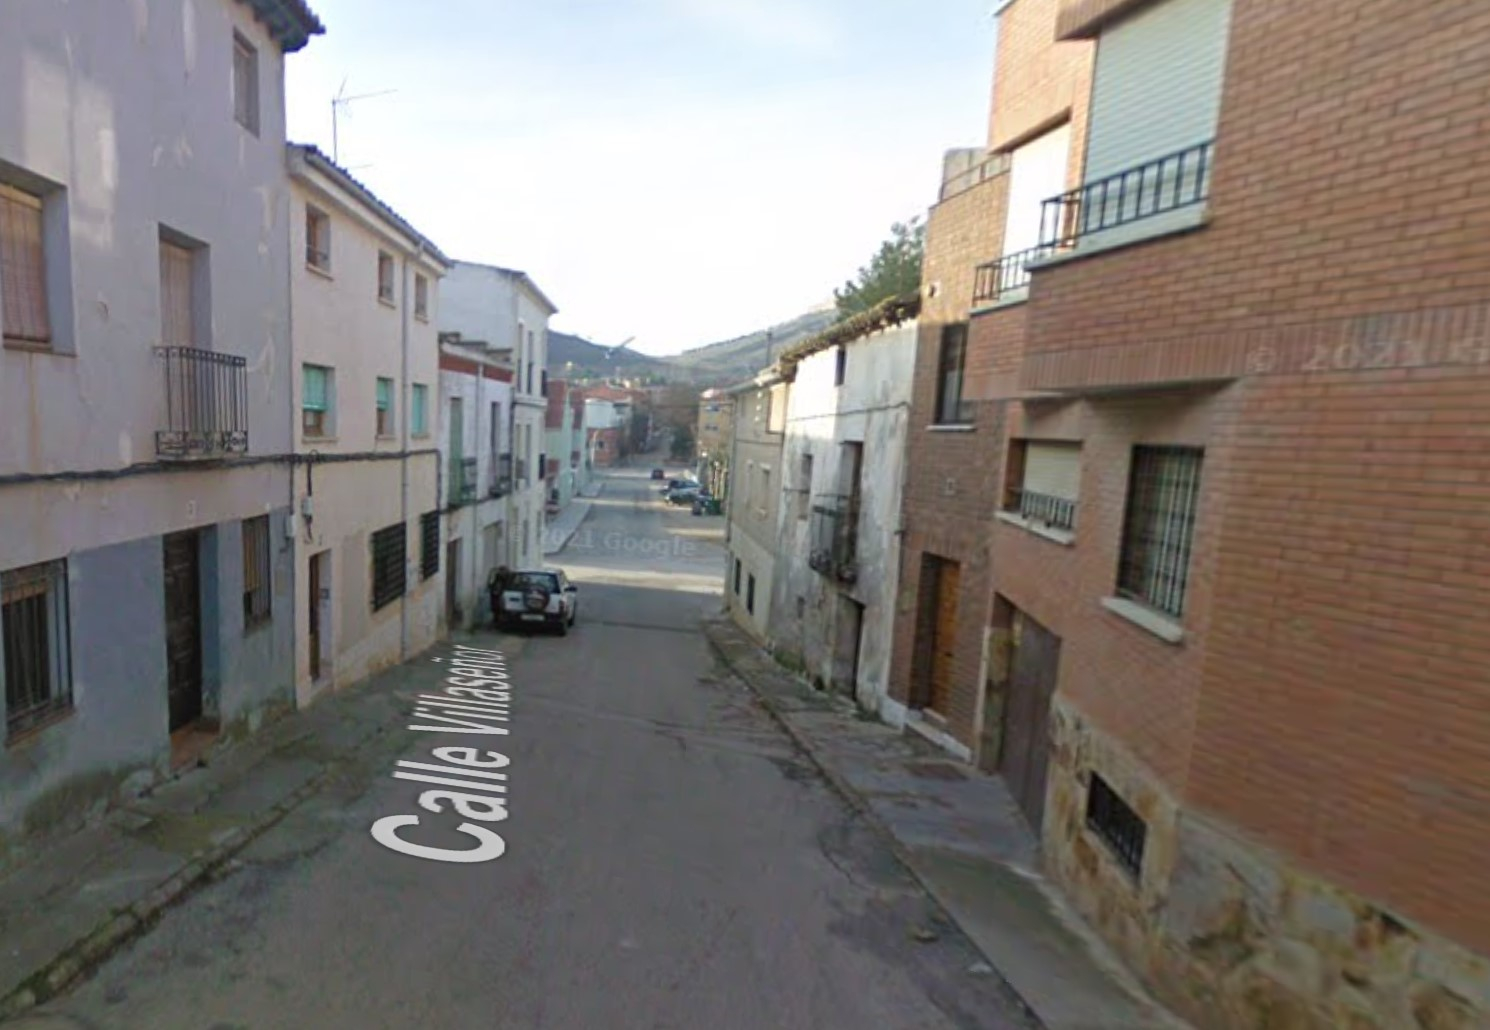 Foto: Calle Villaseñor de Jadraque / Google Maps